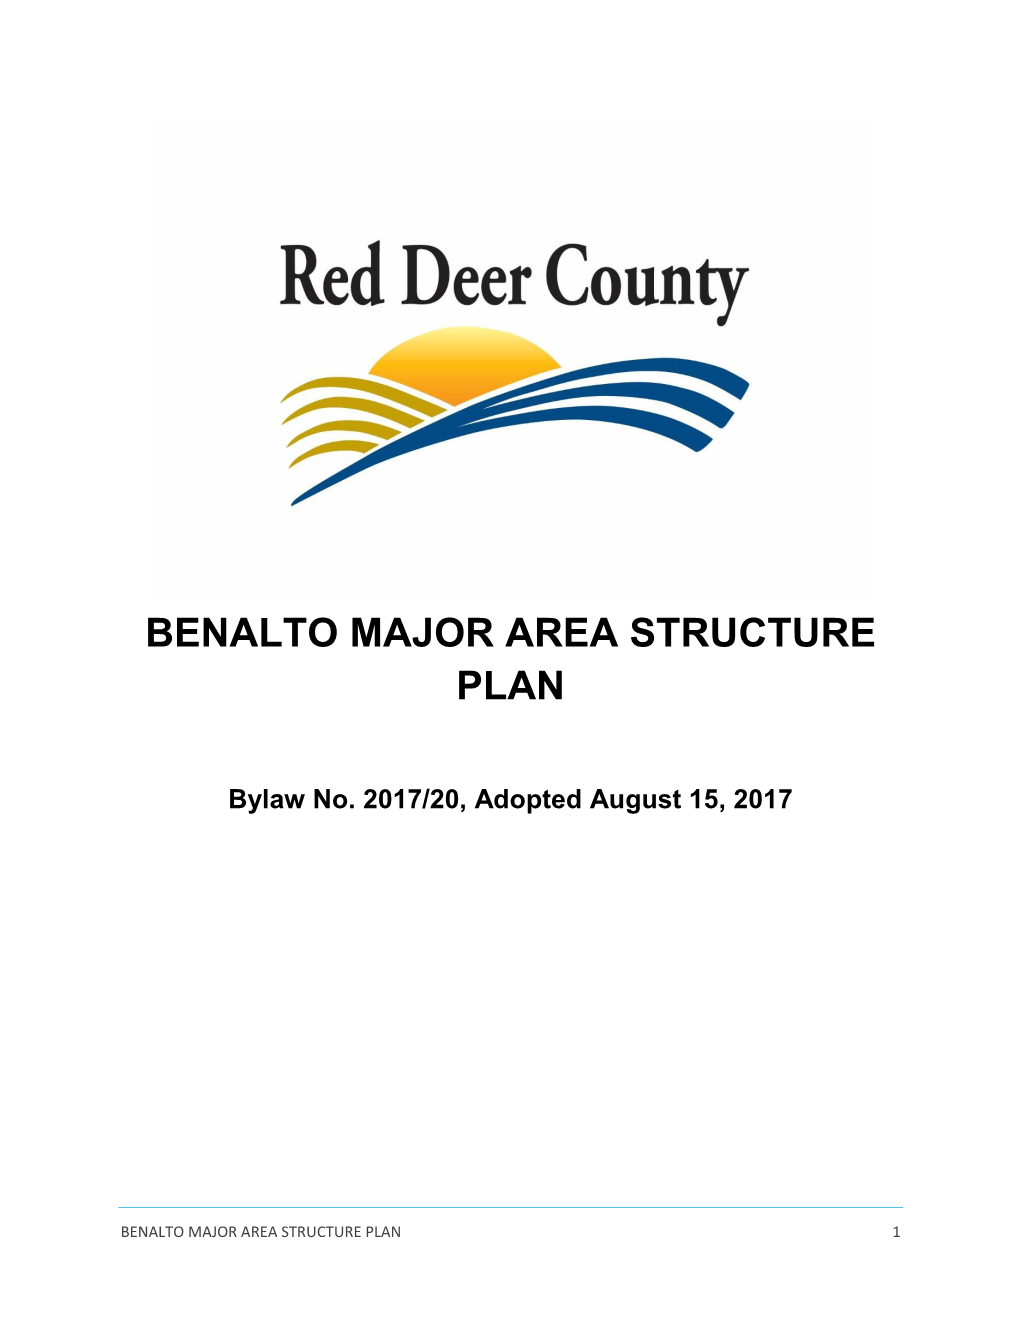 Benalto Major Area Structure Plan